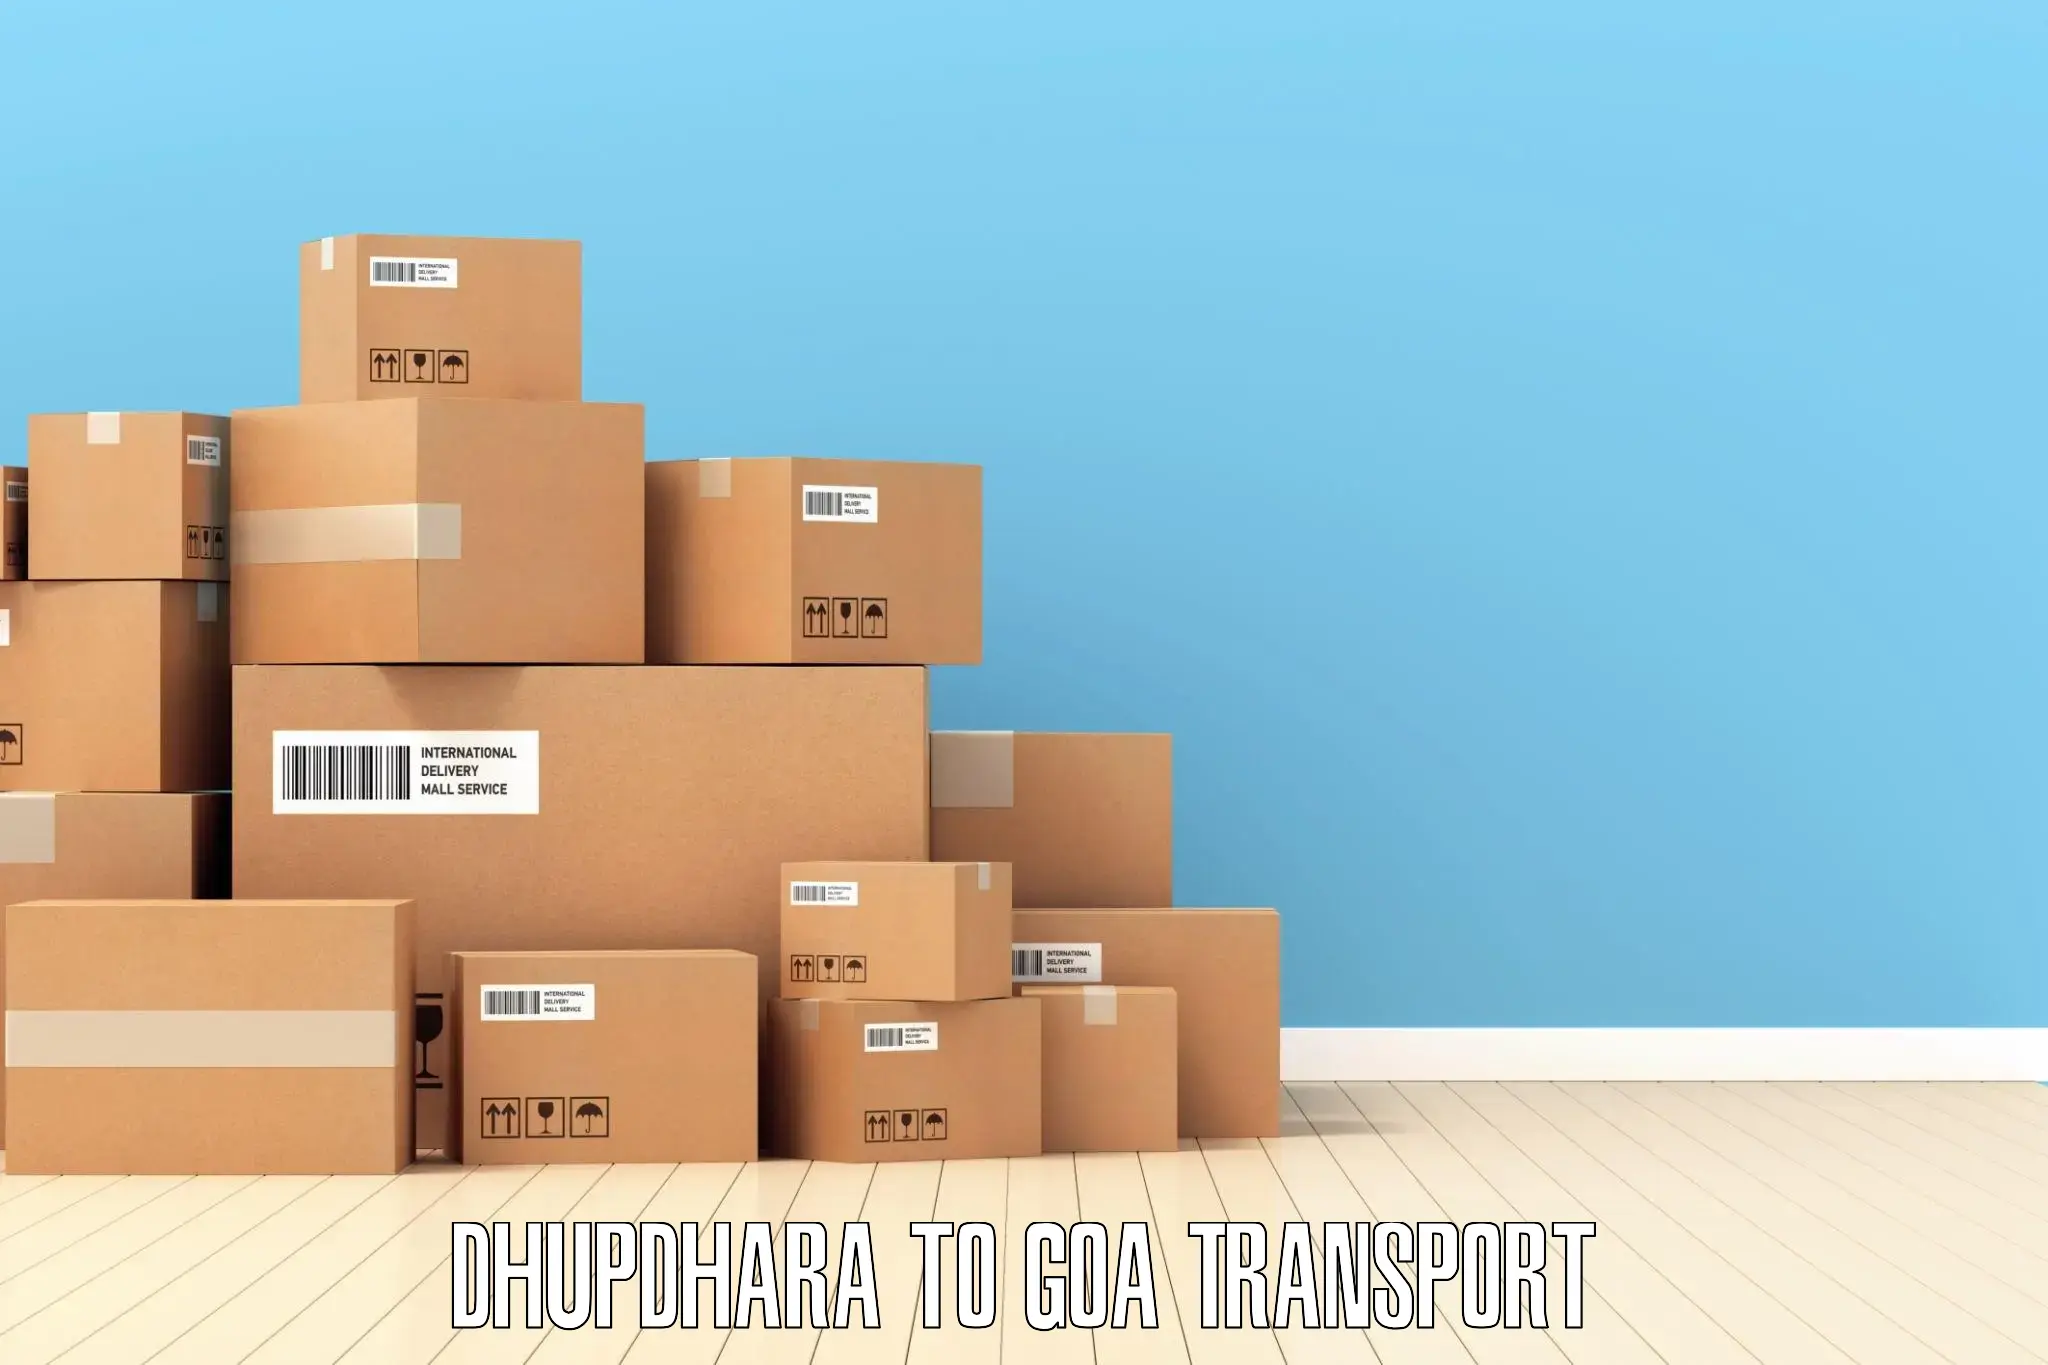 Cargo train transport services Dhupdhara to Mormugao Port